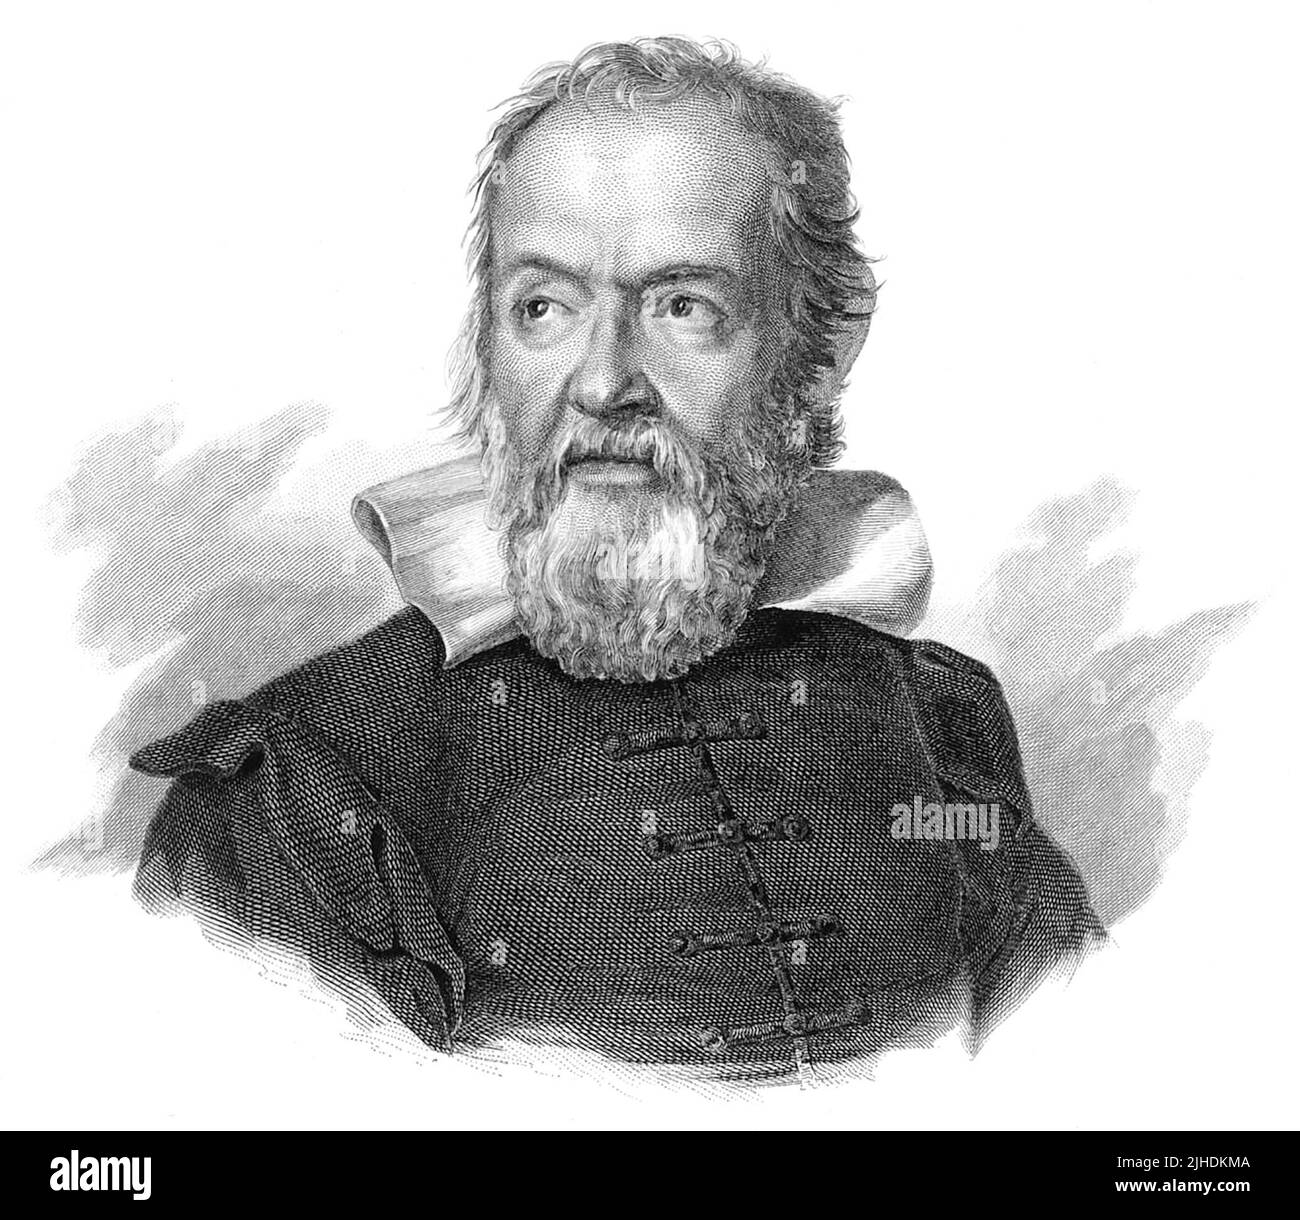 Galileo di Vincenzo Bonaiuti de' Galilei, gemeinhin einfach als Galileo (1564–1642) bezeichnet, war ein italienischer Astronom, Physiker und Ingenieur, manchmal als Universalgelehrter beschrieben, aus der Stadt Pisa. Galileo wurde als „Vater“ der beobachtenden Astronomie, der modernen Physik, der wissenschaftlichen Methode und der modernen Wissenschaft bezeichnet. Stockfoto